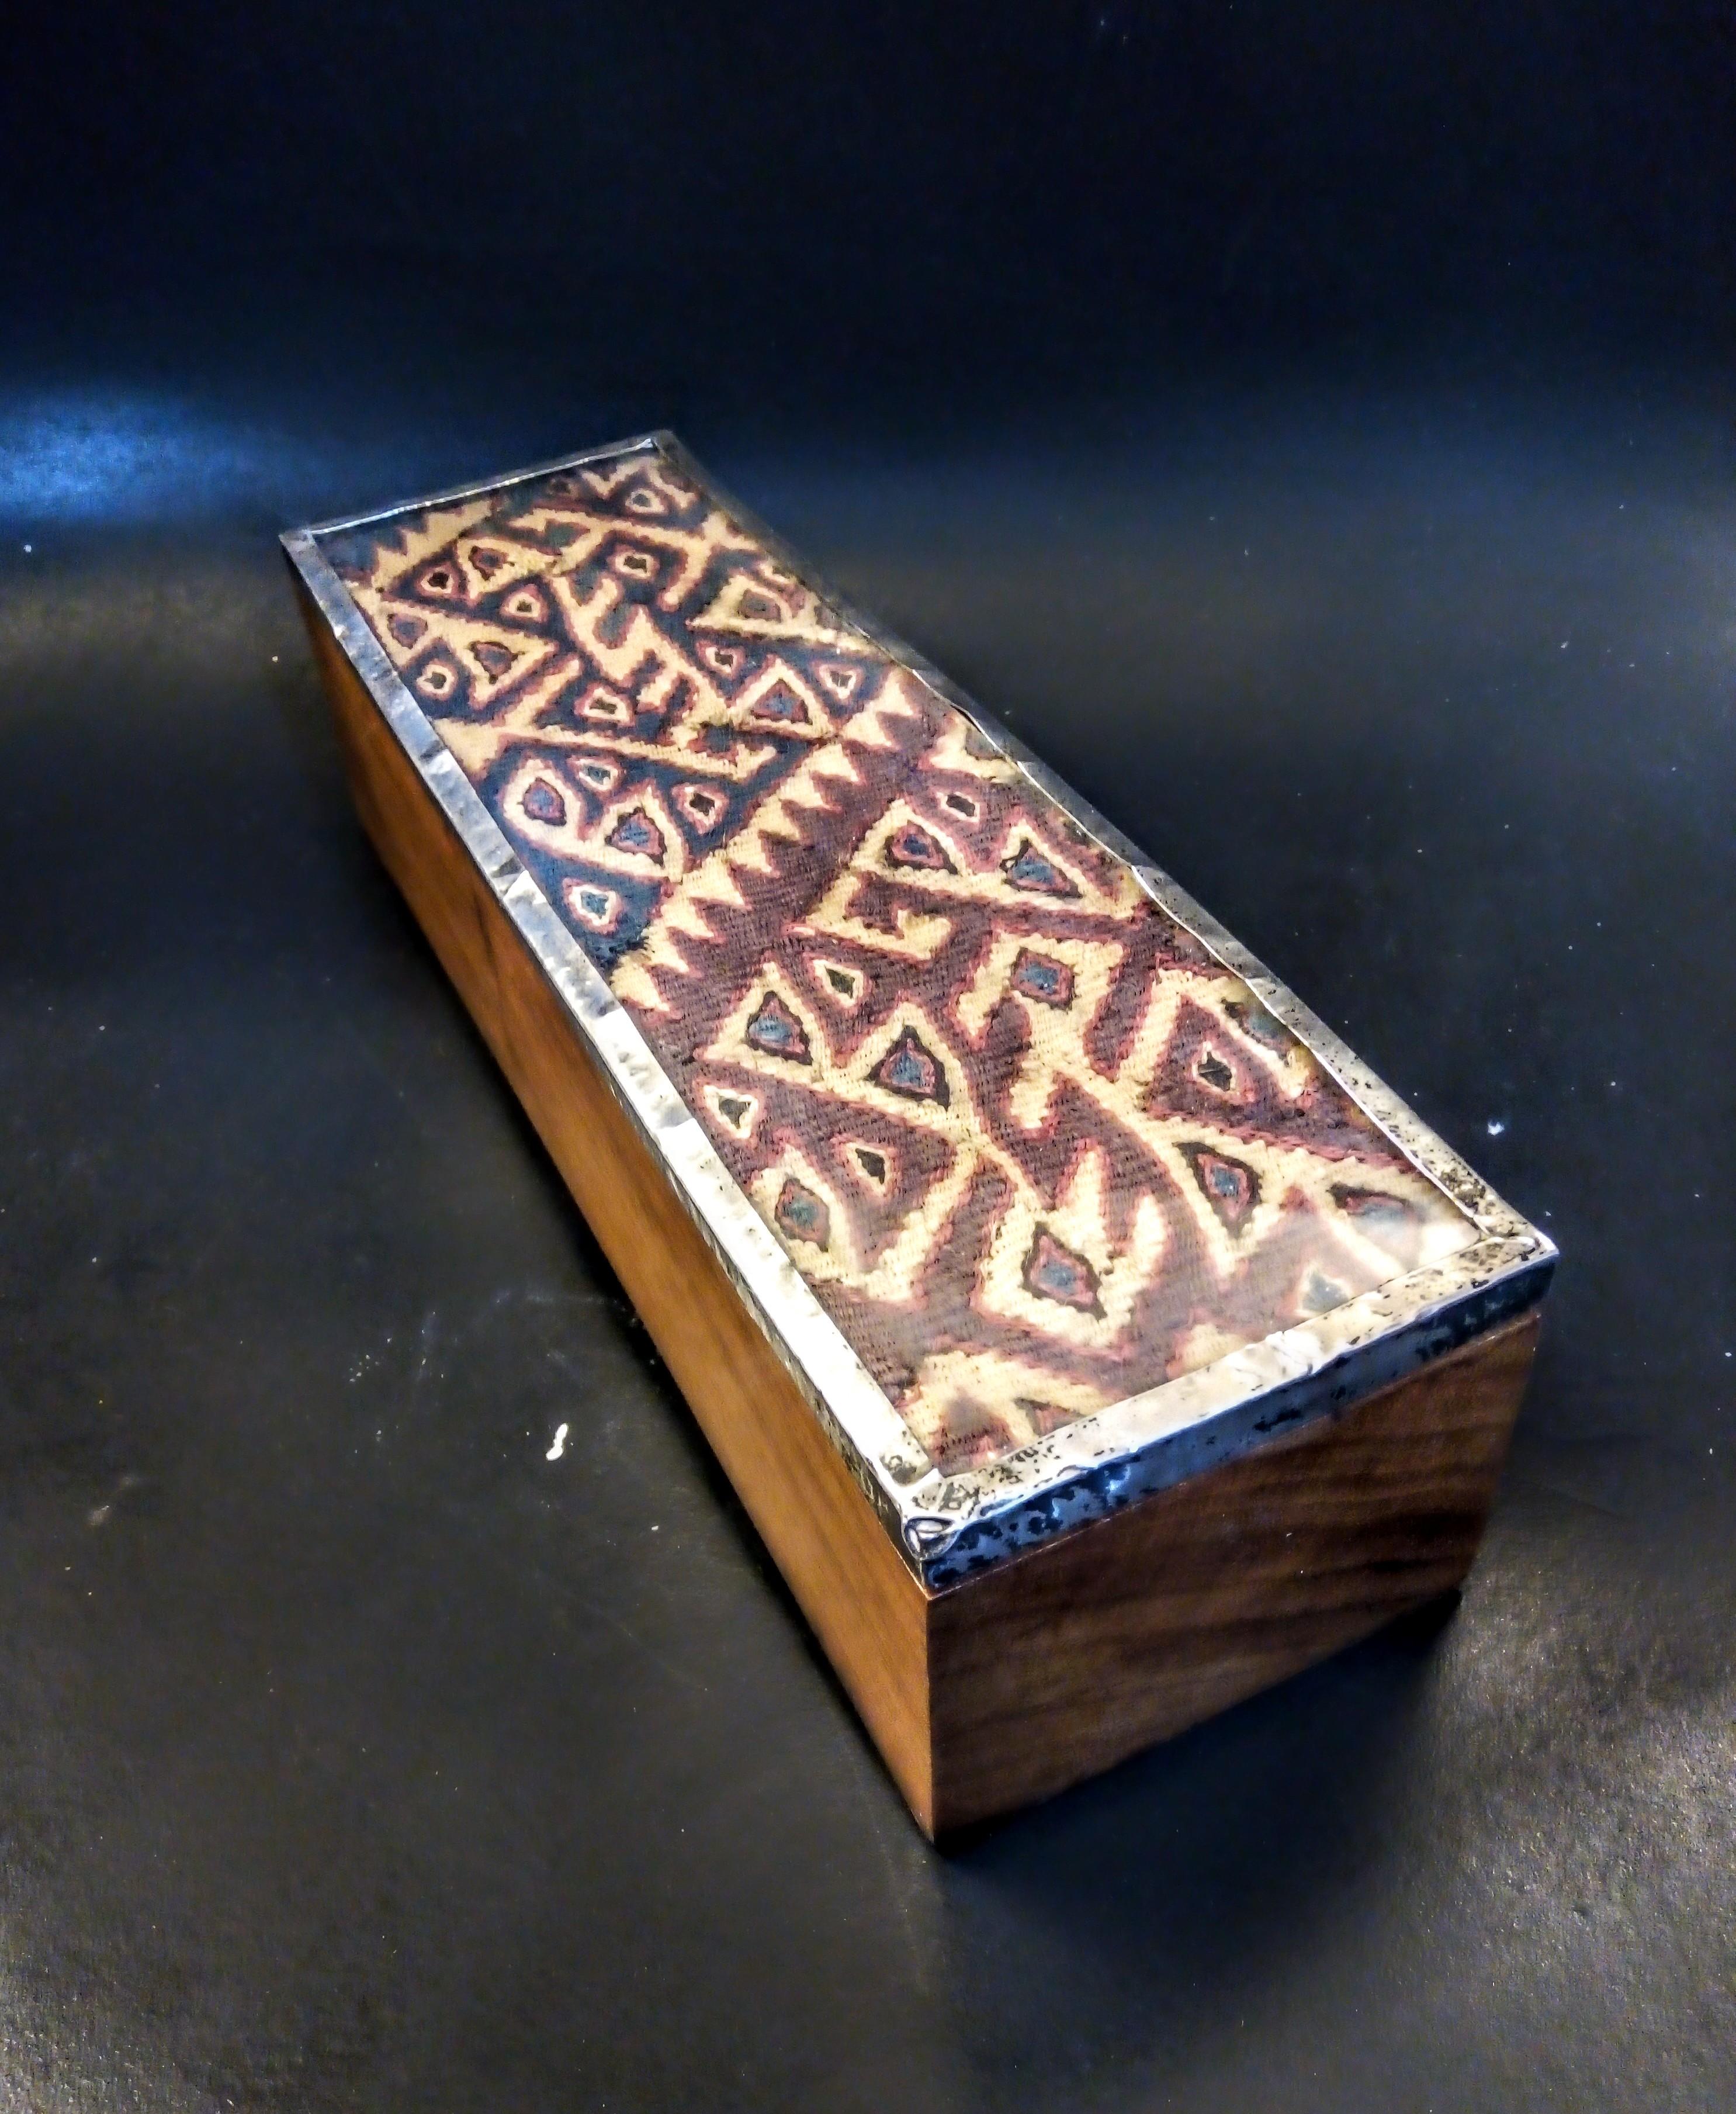 Diese schöne Kiste wurde von Hand in zwei Teile aus Cumarú-Holz (auch bekannt als brasilianisches Teakholz) geschnitzt, es gibt keine Schrauben oder Nägel und keine Zusammenbauten. Das Holz ist braun mit sichtbarer Maserung und einer dunklen Tönung